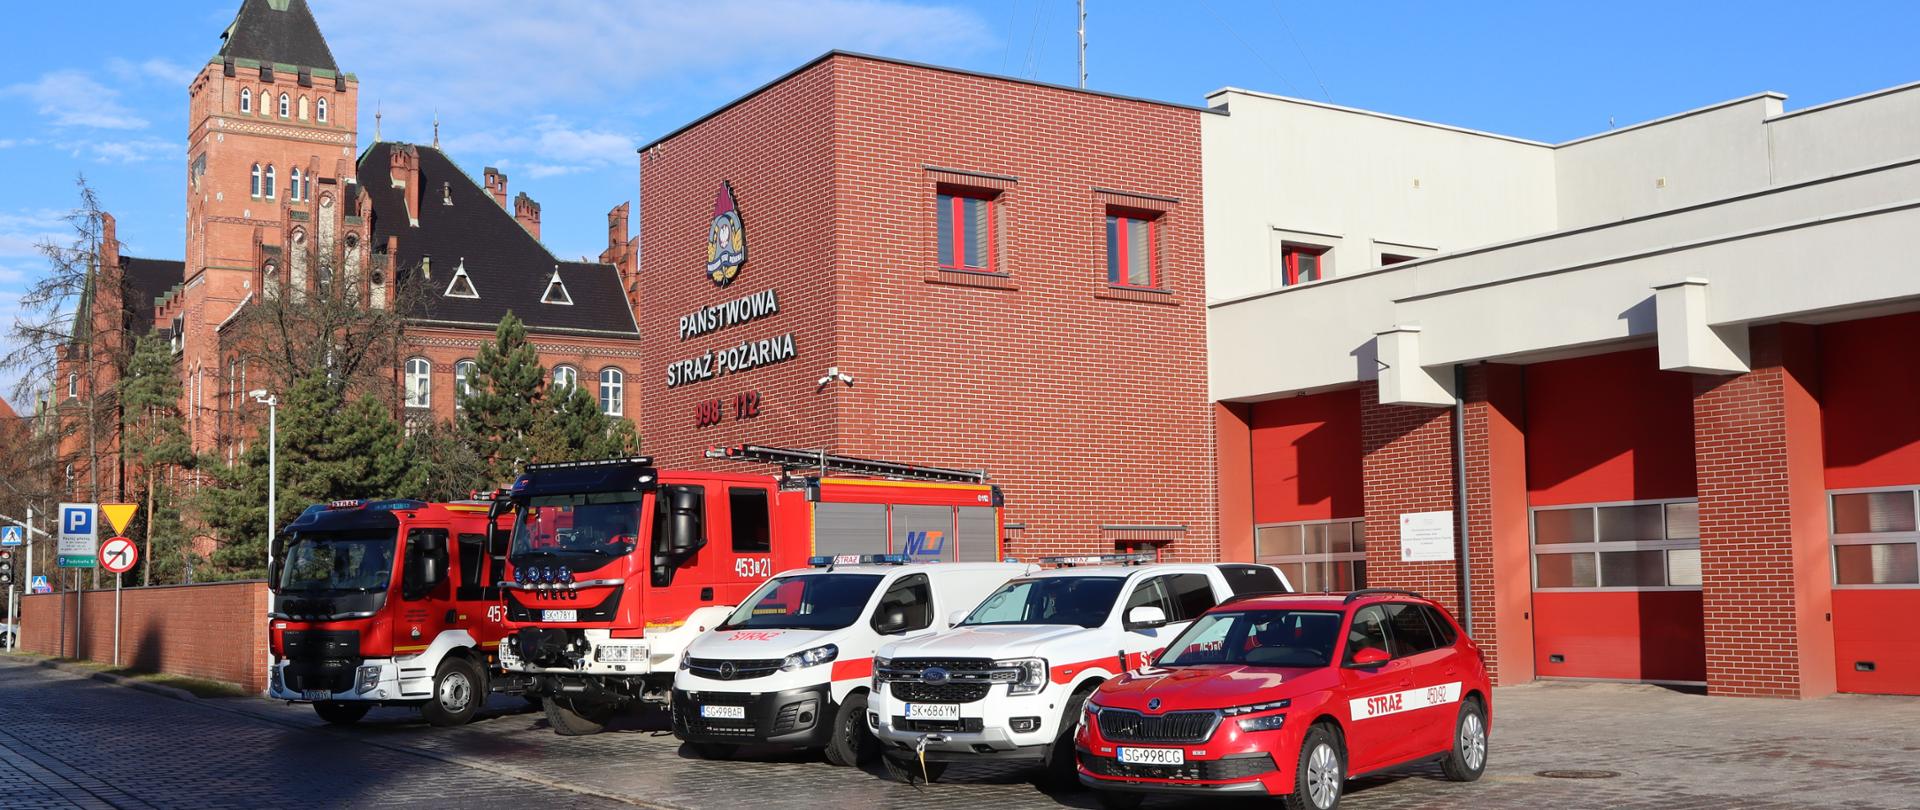 Nowe samochody na wyposażeniu
Komendy Miejskiej Państwowej Straży Pożarnej
w Gliwicach